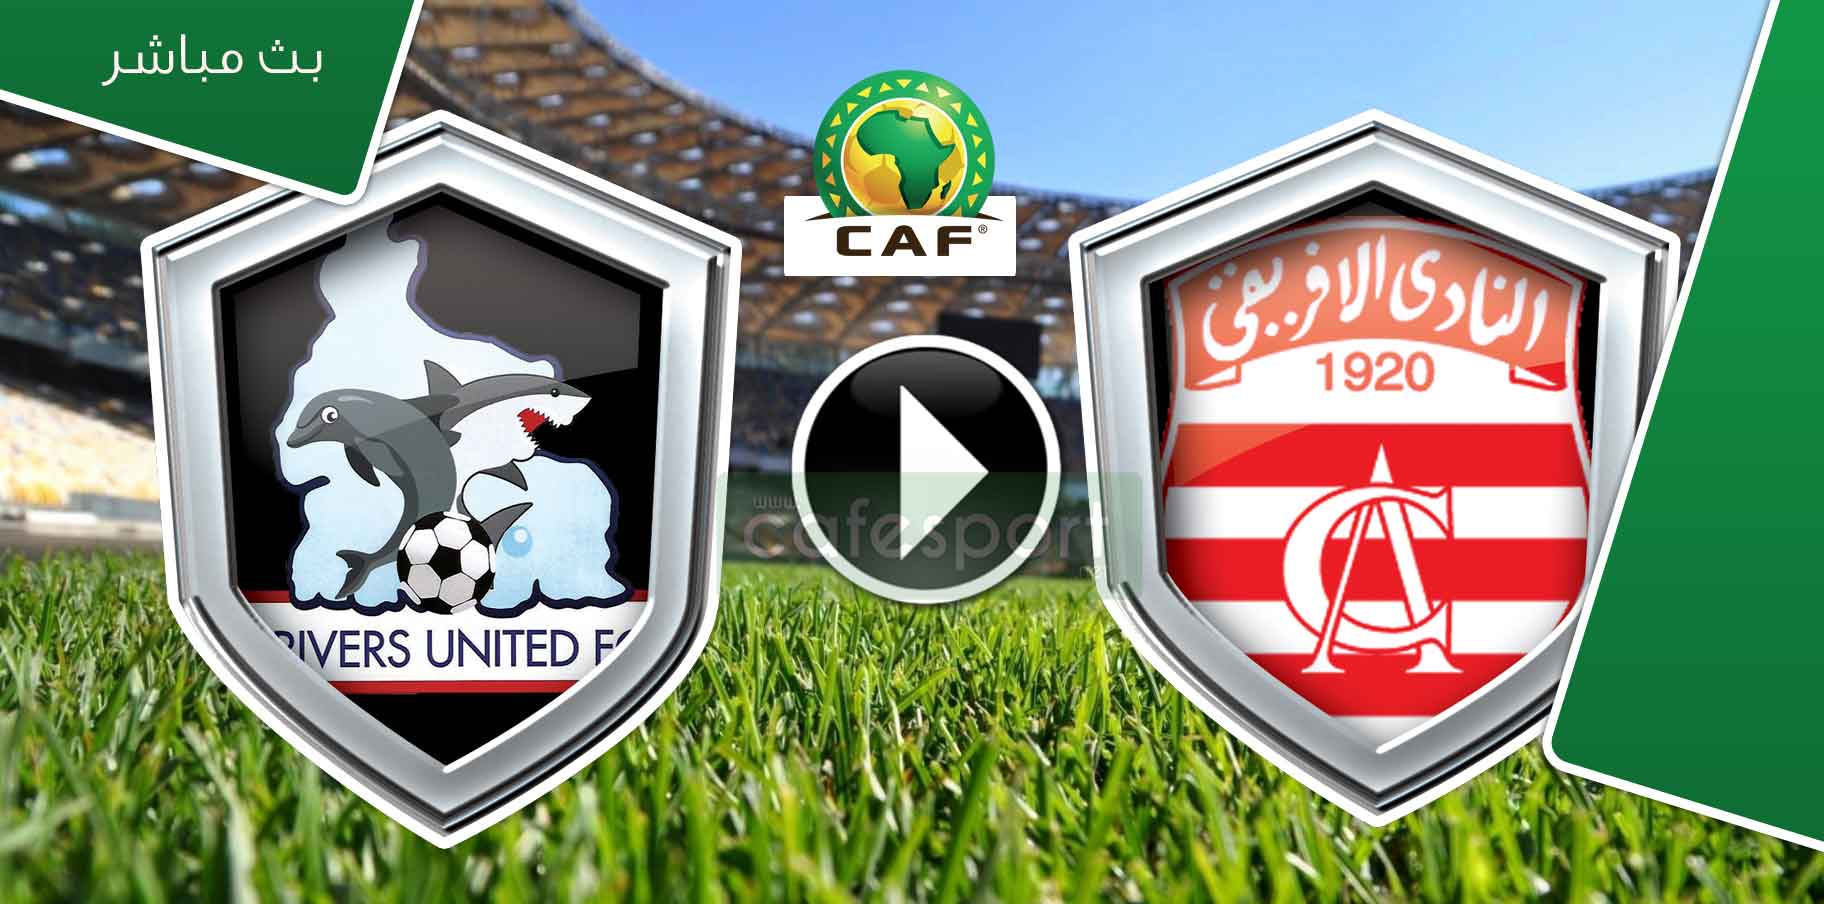 بث مباشر لمباراة النادي الافريقي ضد ريفرز النيجيري